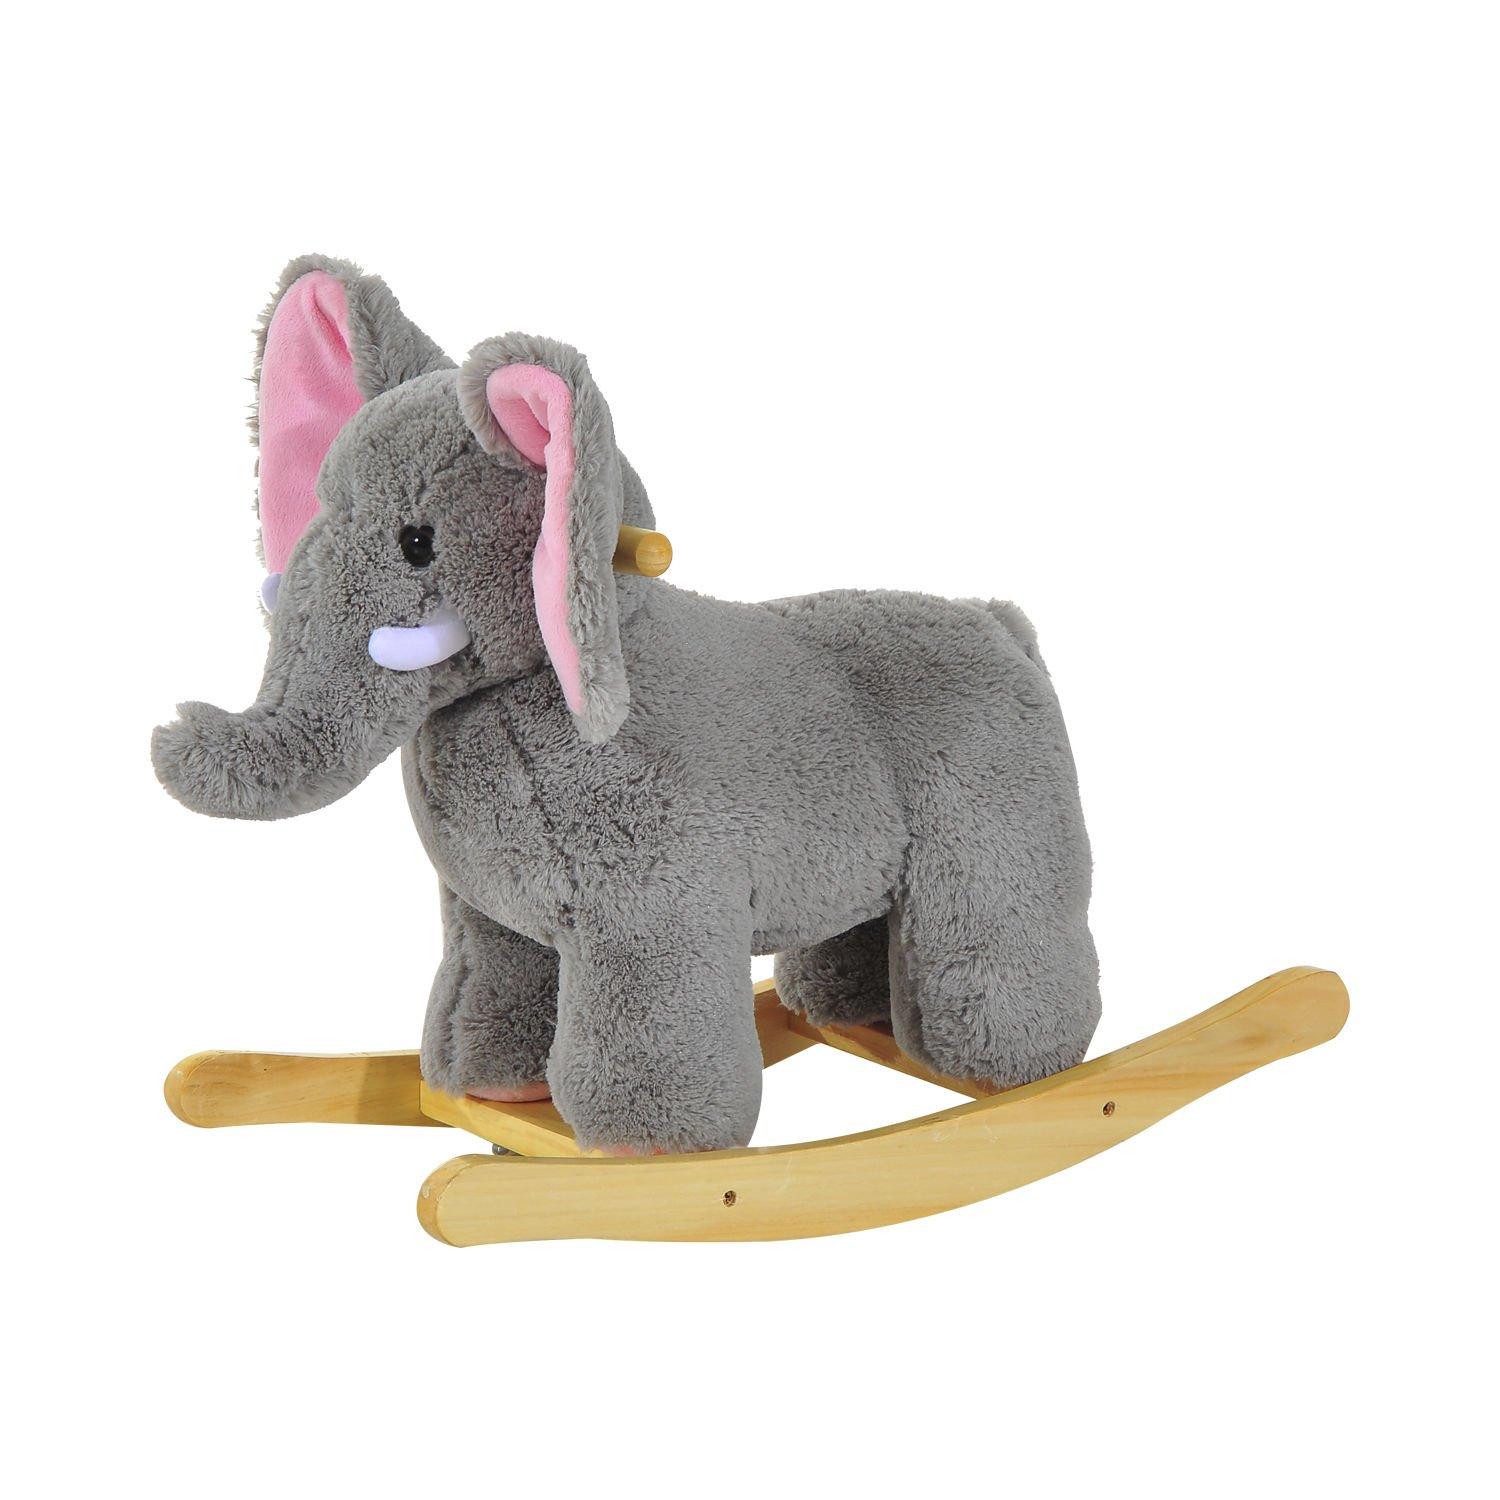 Baby Kids Plush Toy Rocking Horse Elephant Sheep Style Ride on Rocker